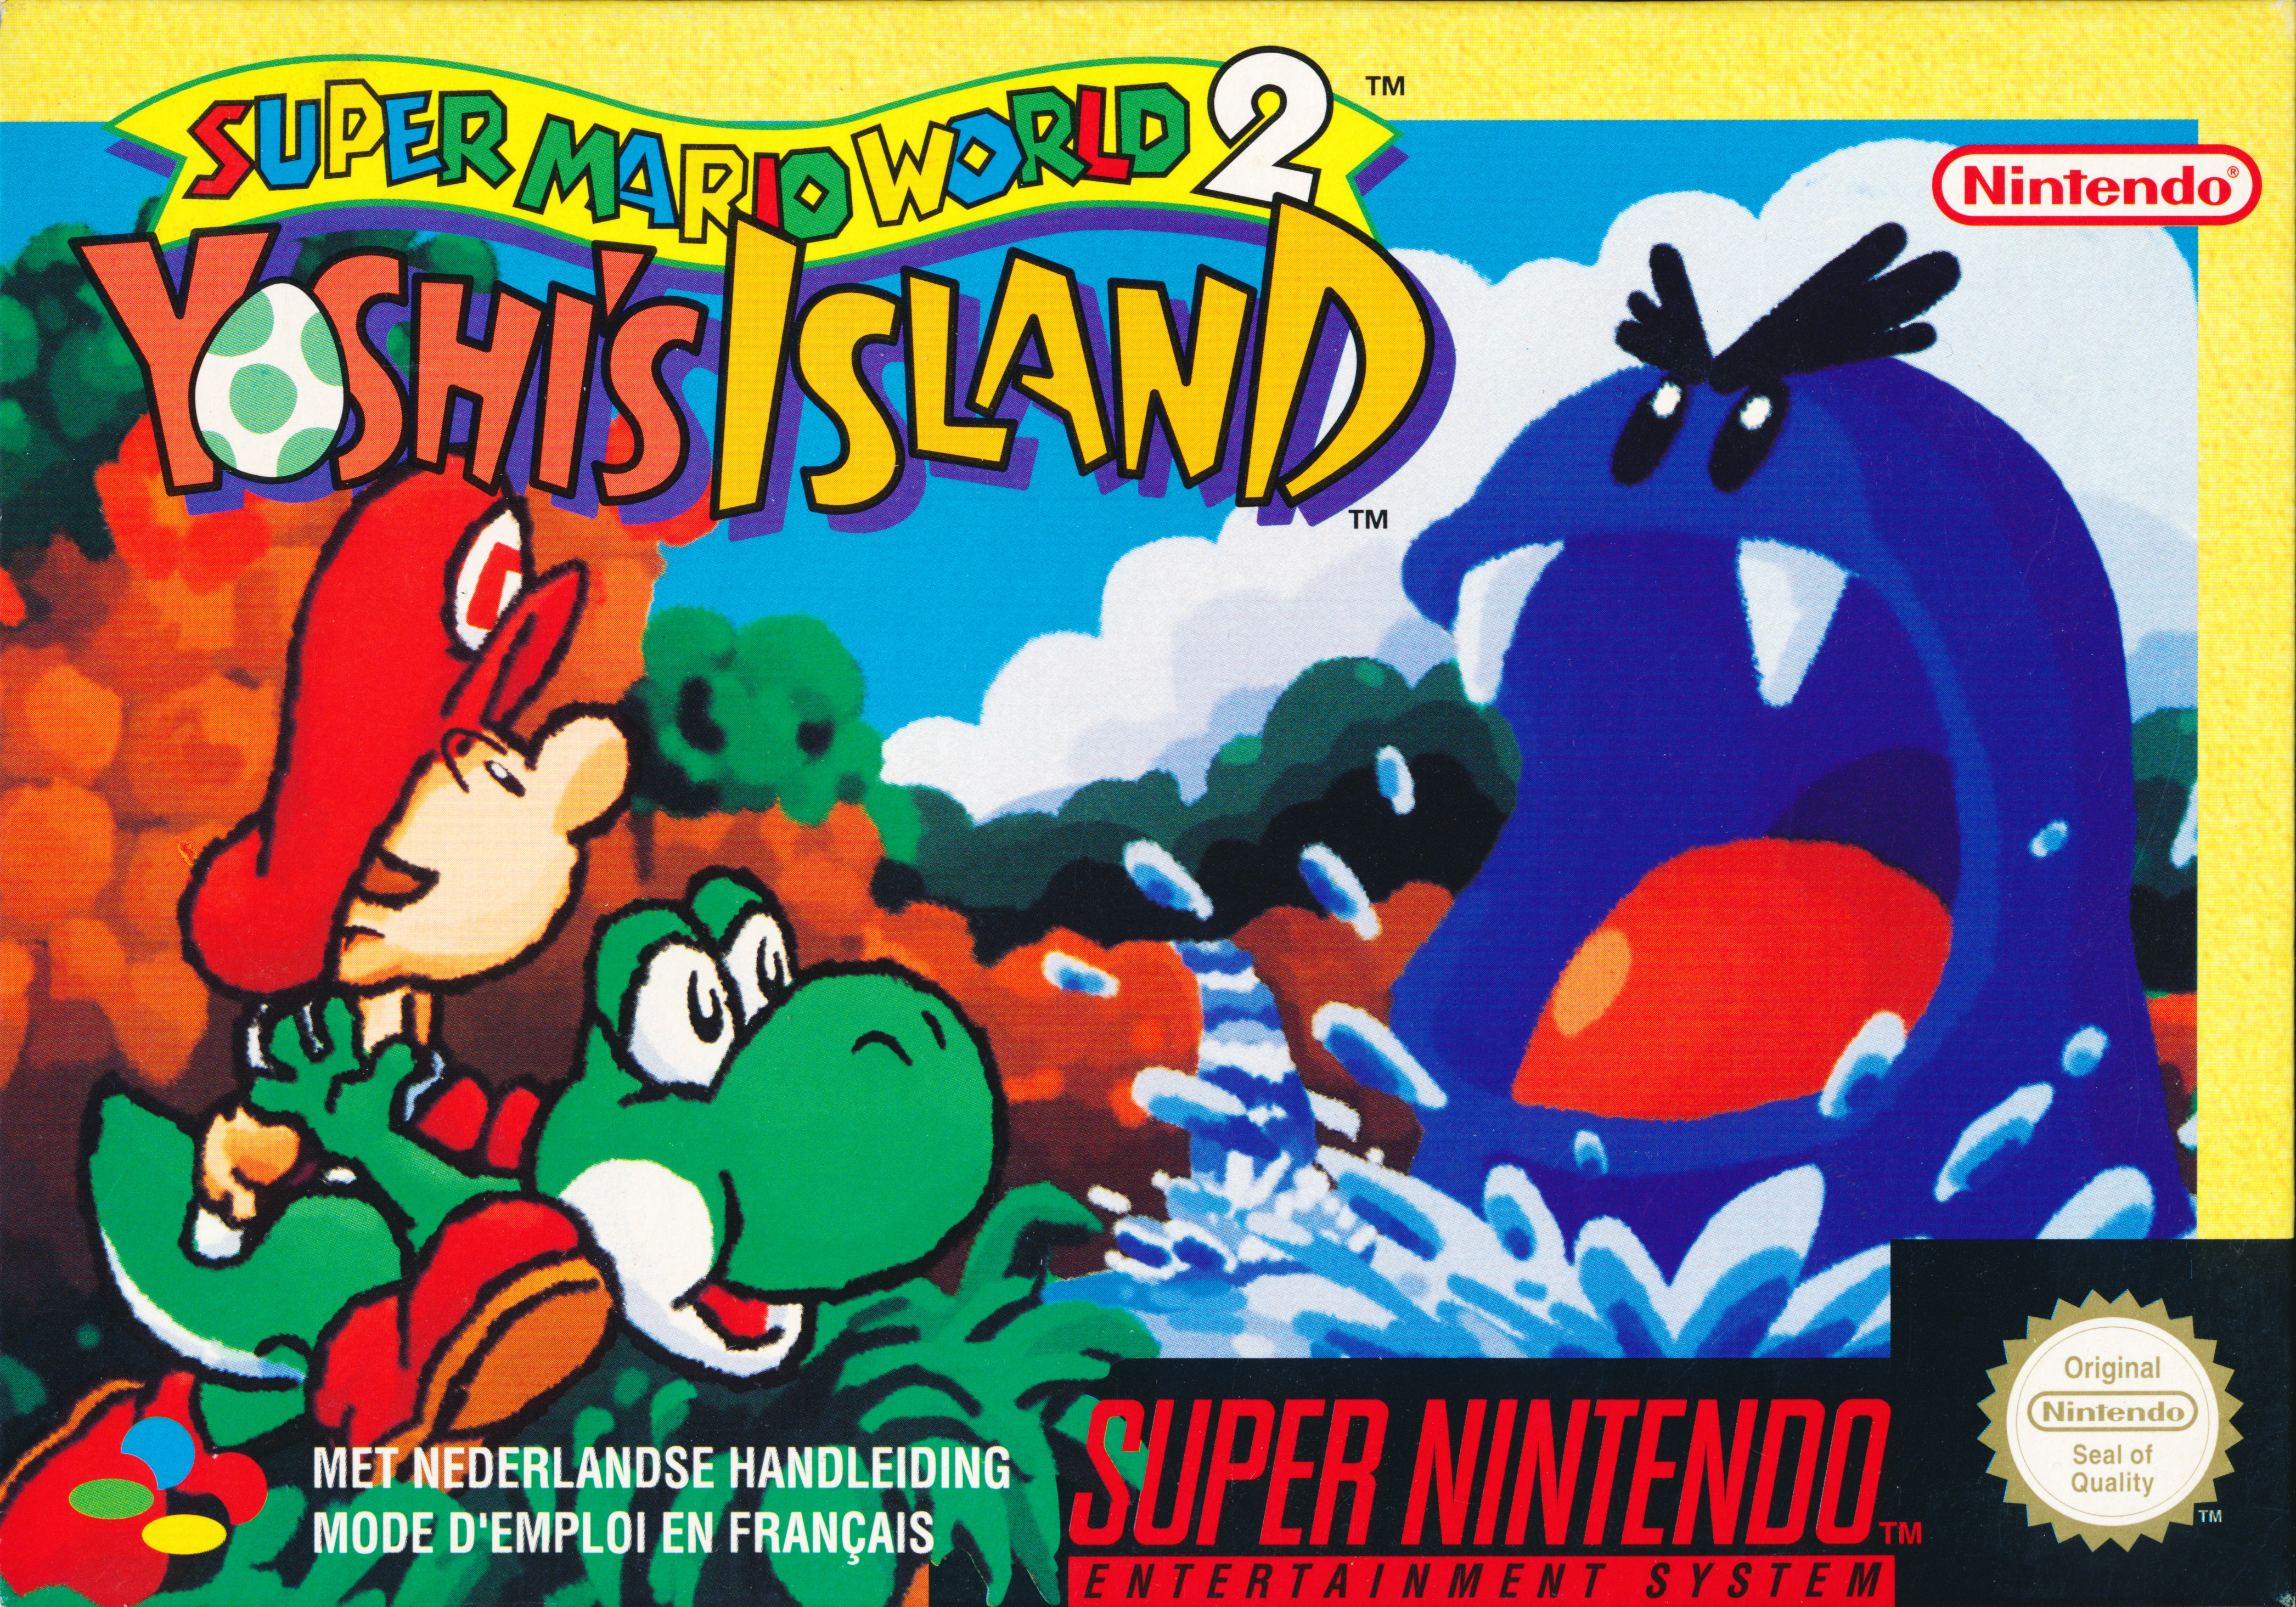 Yoshi s world. Super Mario World 2 - Yoshi's Island Snes. Super Mario World 2 Snes. Super Mario World супер Нинтендо. Super Mario World 2 Yoshis Island.